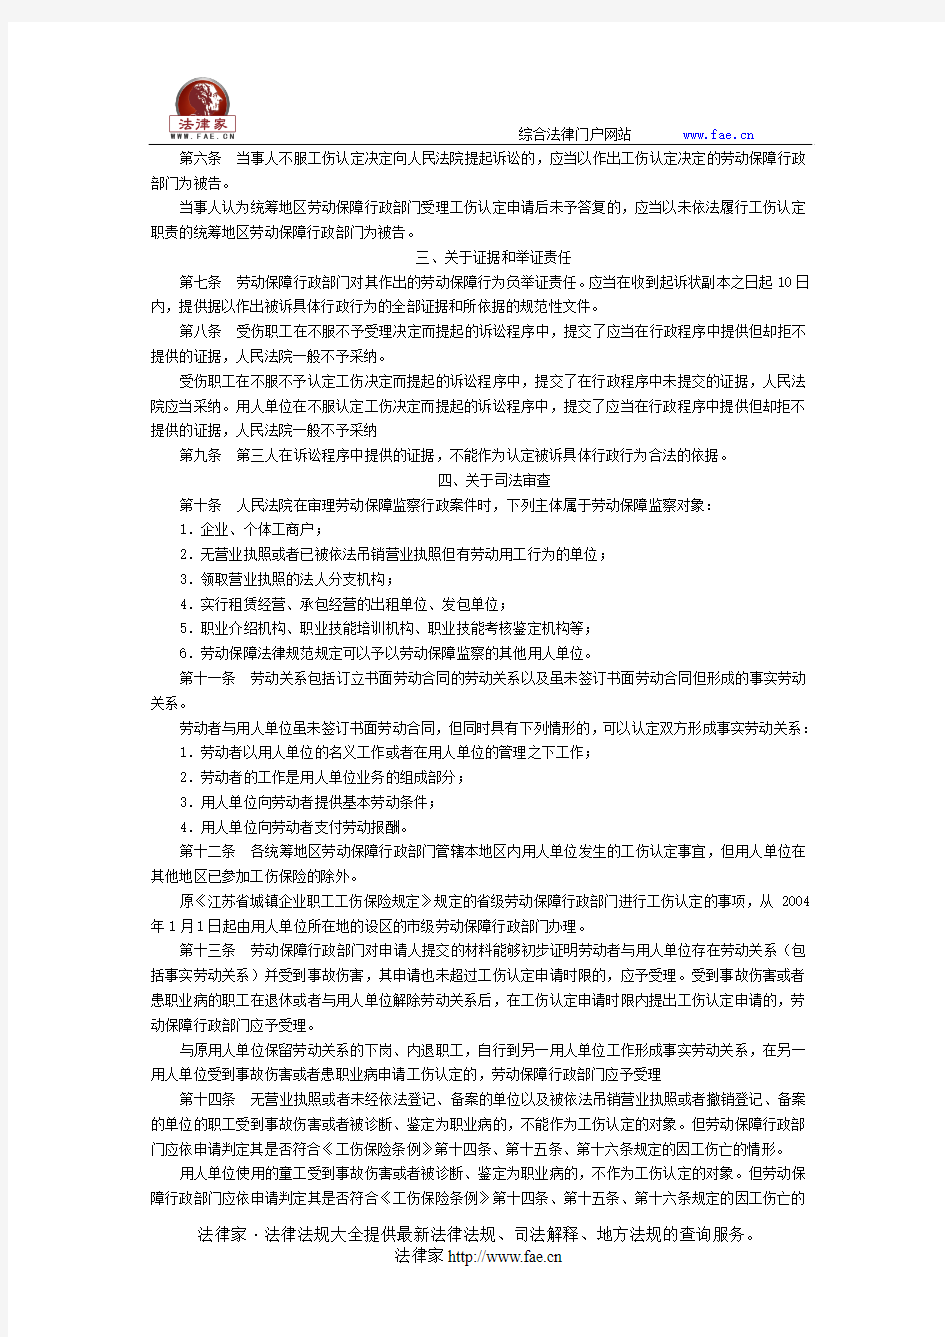 江苏省高级人民法院关于审理劳动保障监察、工伤认定行政案件若干问题的意见-地方司法规范